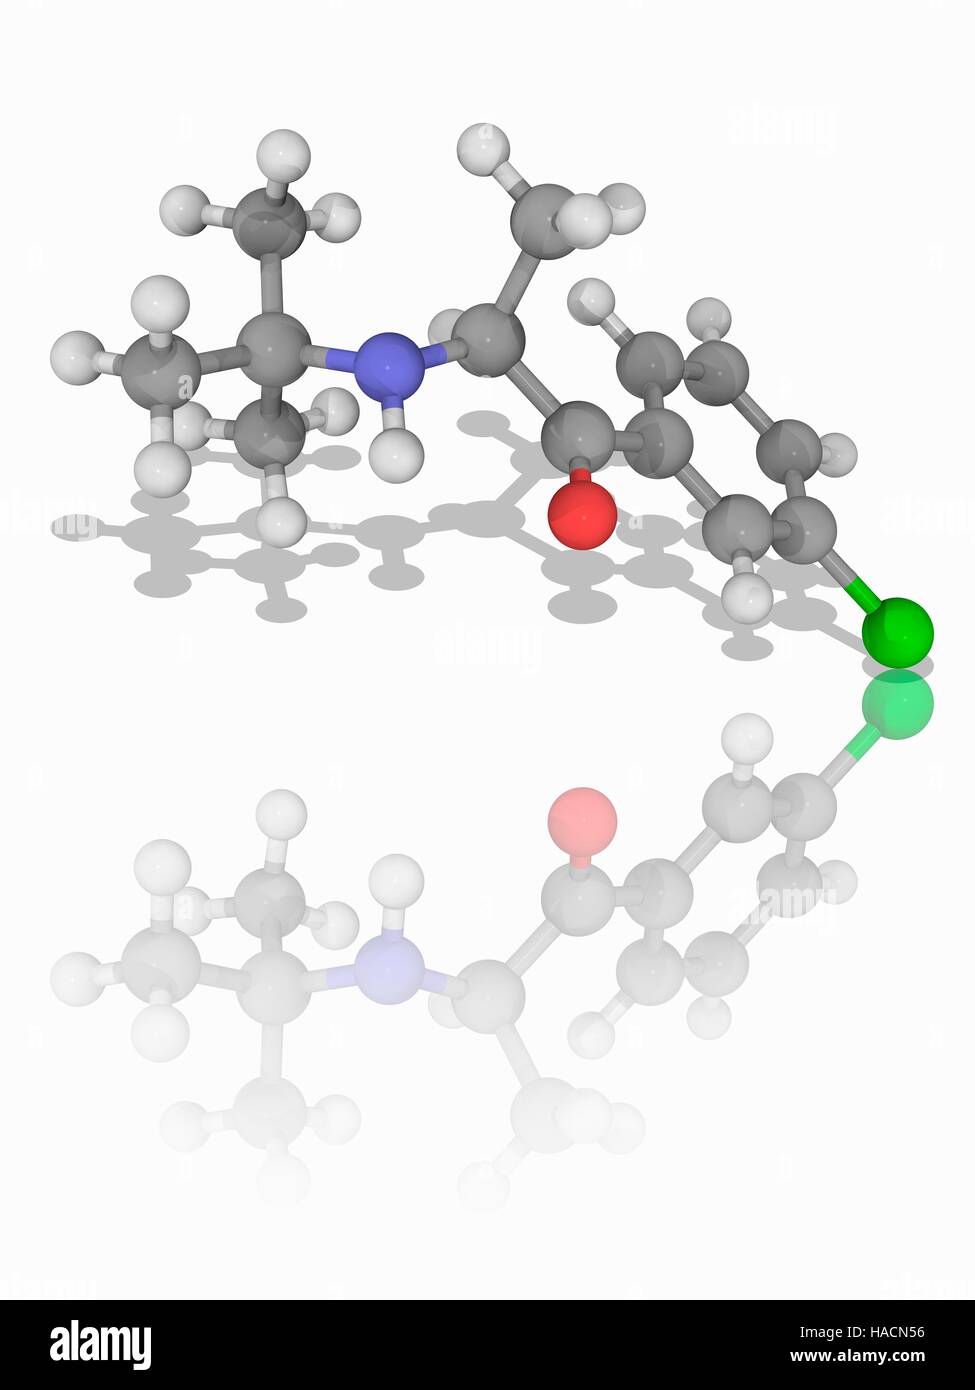 Bupropion. Molekulares Modell des Medikaments Bupropion (C13. H18. Cl.N.O), verwendet als Antidepressivum und als Hilfsmittel mit dem Rauchen aufzuhören. Atome als Kugeln dargestellt werden und sind farblich gekennzeichnet: Kohlenstoff (grau), Wasserstoff (weiß), Stickstoff (blau), Sauerstoff (rot) und Chlor (grün). Abbildung. Stockfoto